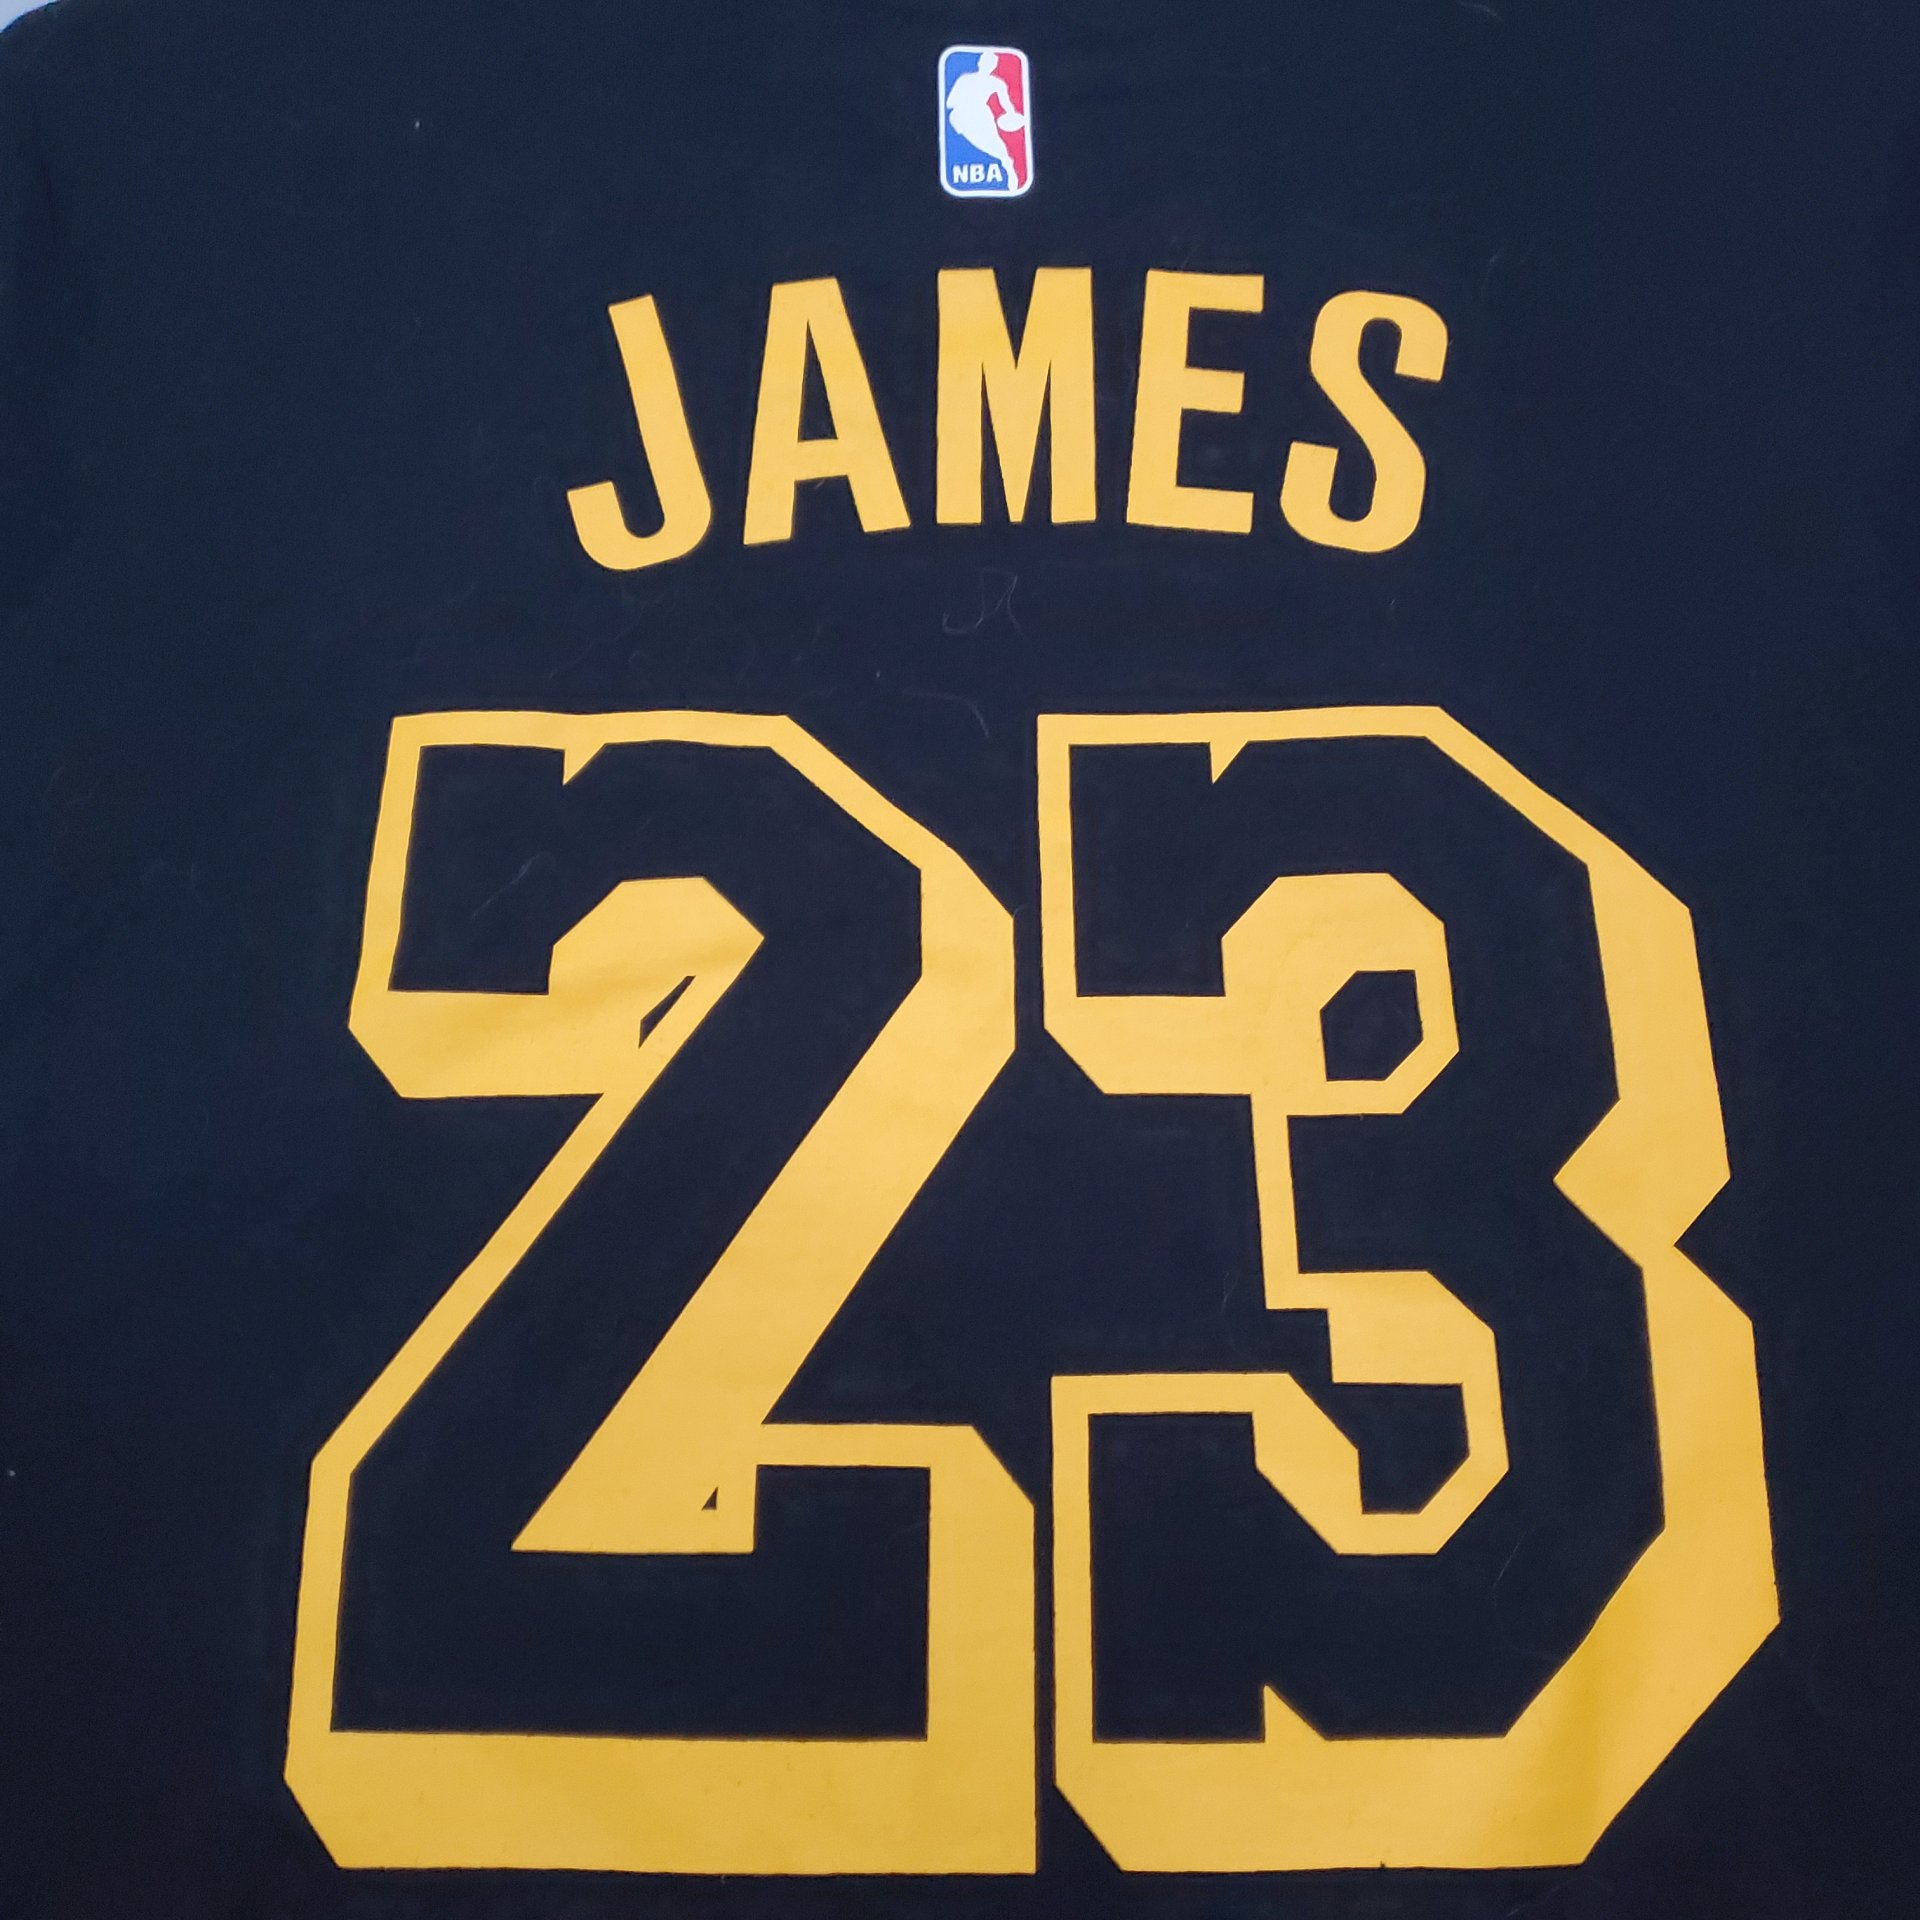 WELETION Los Angeles Lakers 23# Lebron James T-Shirt de Basketball pour Homme